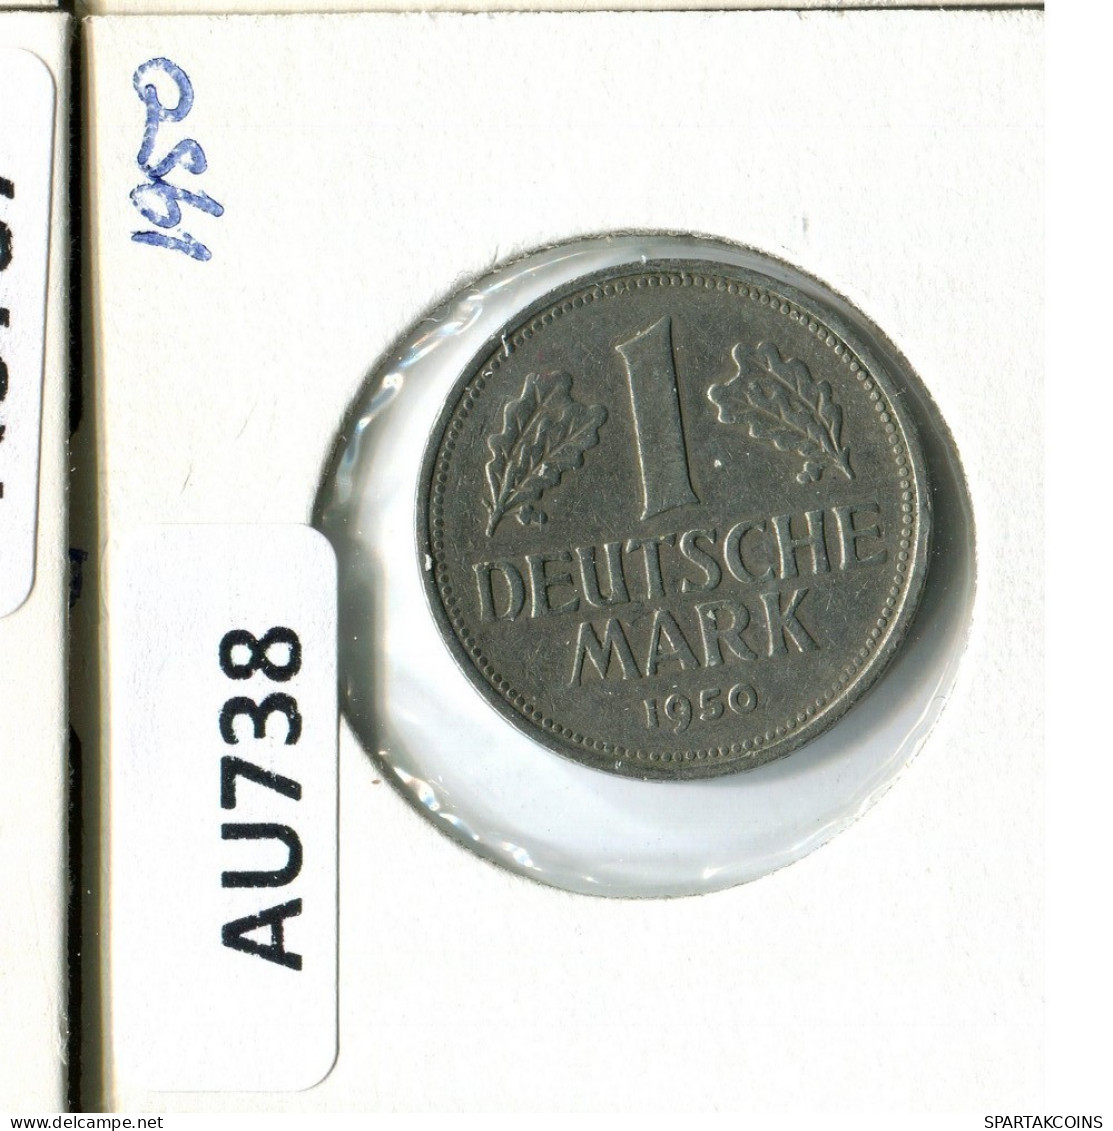 1 DM 1950 G BRD ALEMANIA Moneda GERMANY #AU738.E.A - 1 Mark